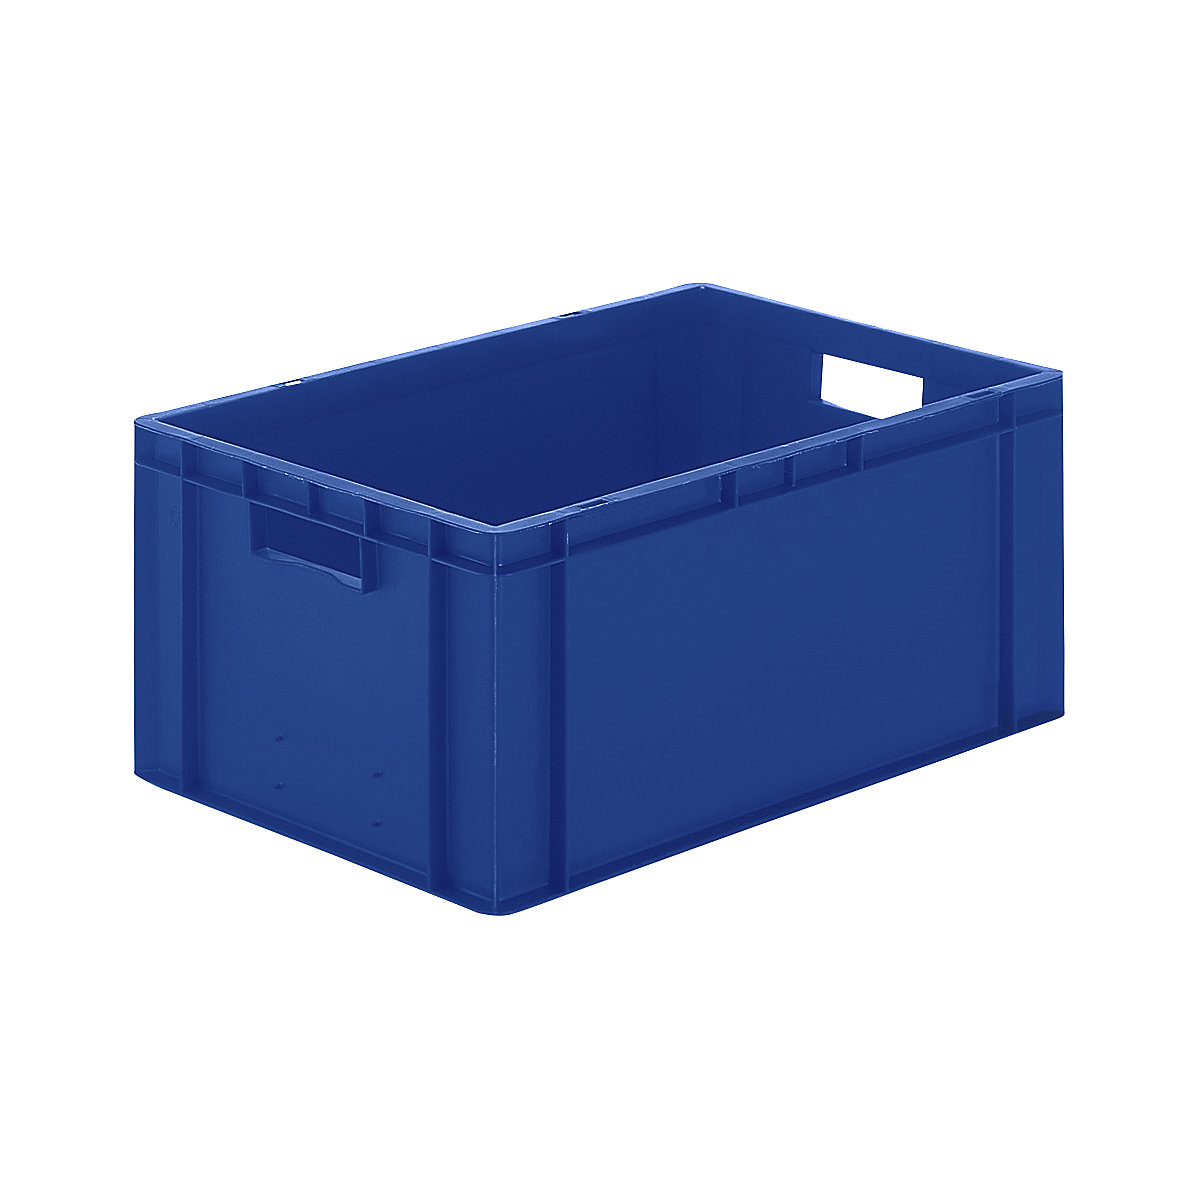 Euro-Format-Stapelbehälter, Wände und Boden geschlossen, LxBxH 600 x 400 x 270 mm, blau, VE 5 Stk